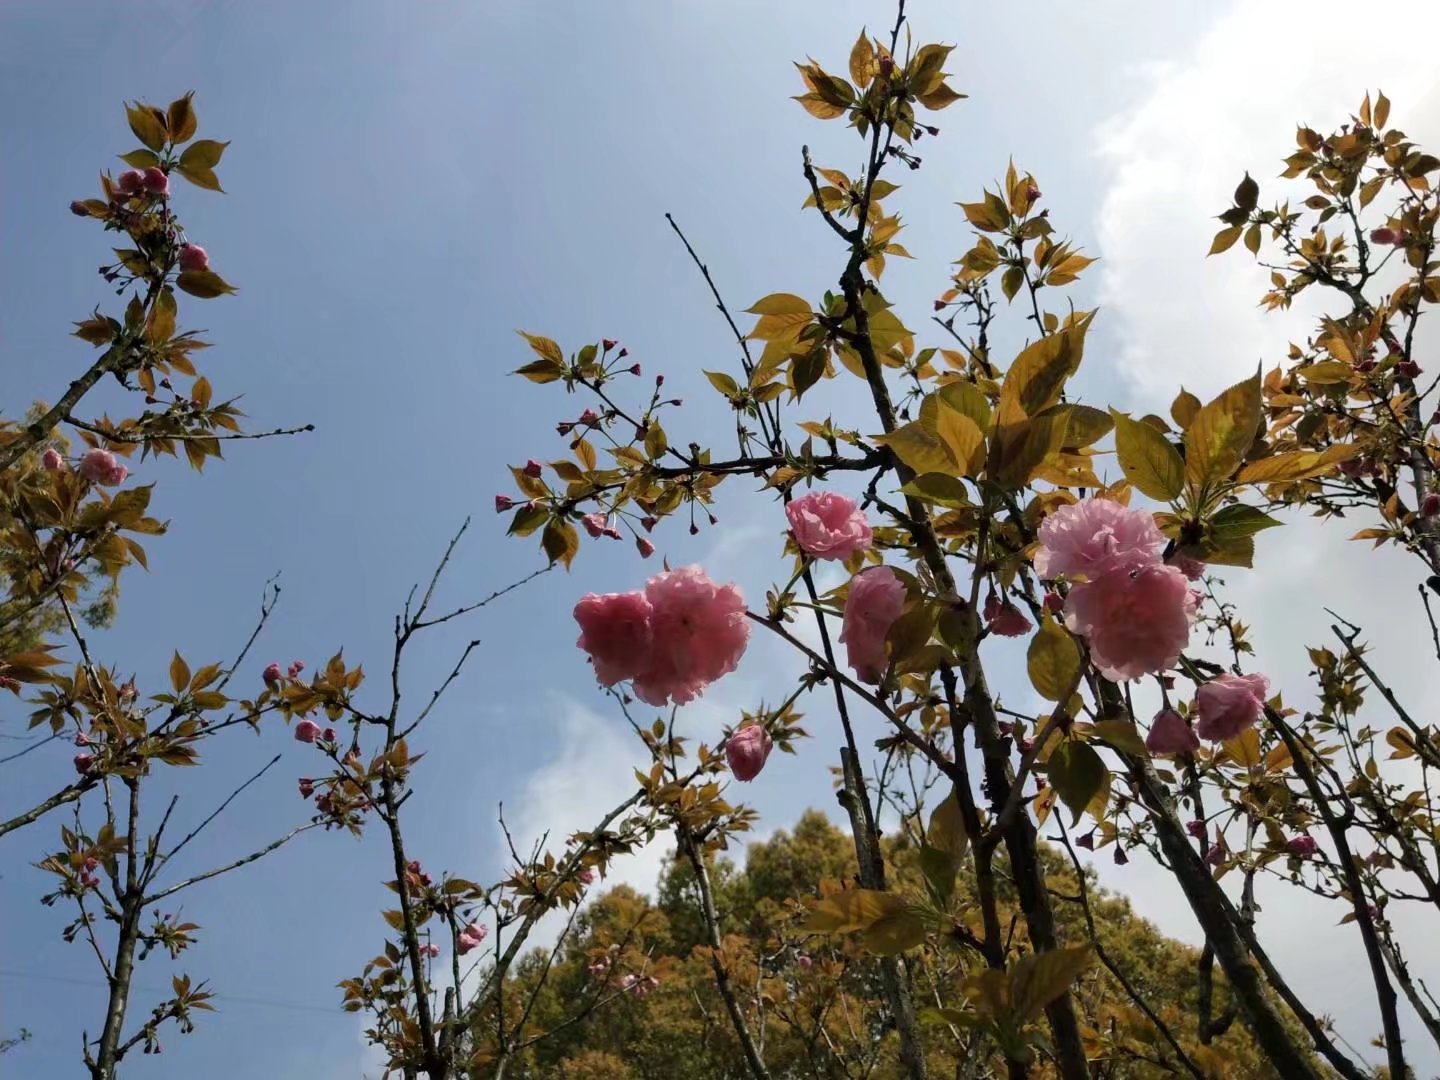 今天去,还没开多少呢每年的四五月份是石峰公园的樱花节,大片的樱花